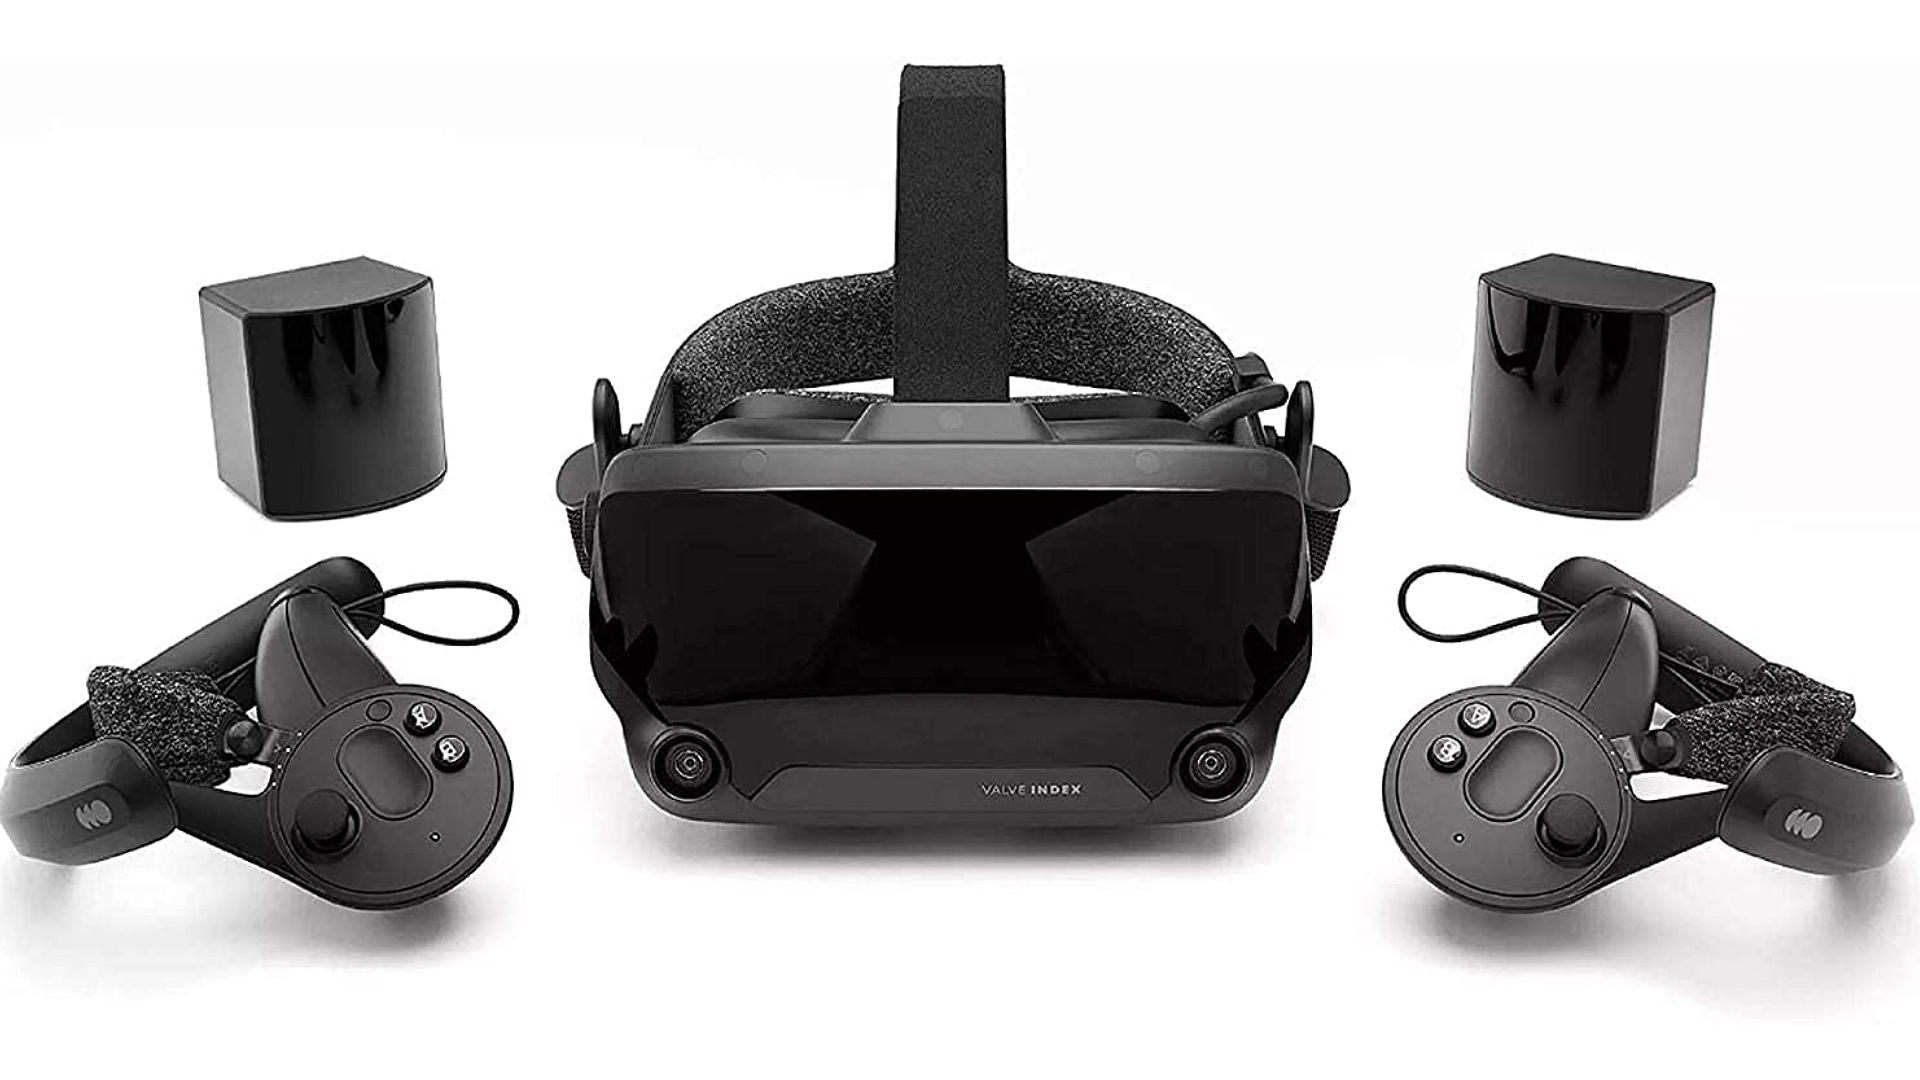 Los mejores auriculares VR: Valve Index sobre fondo blanco